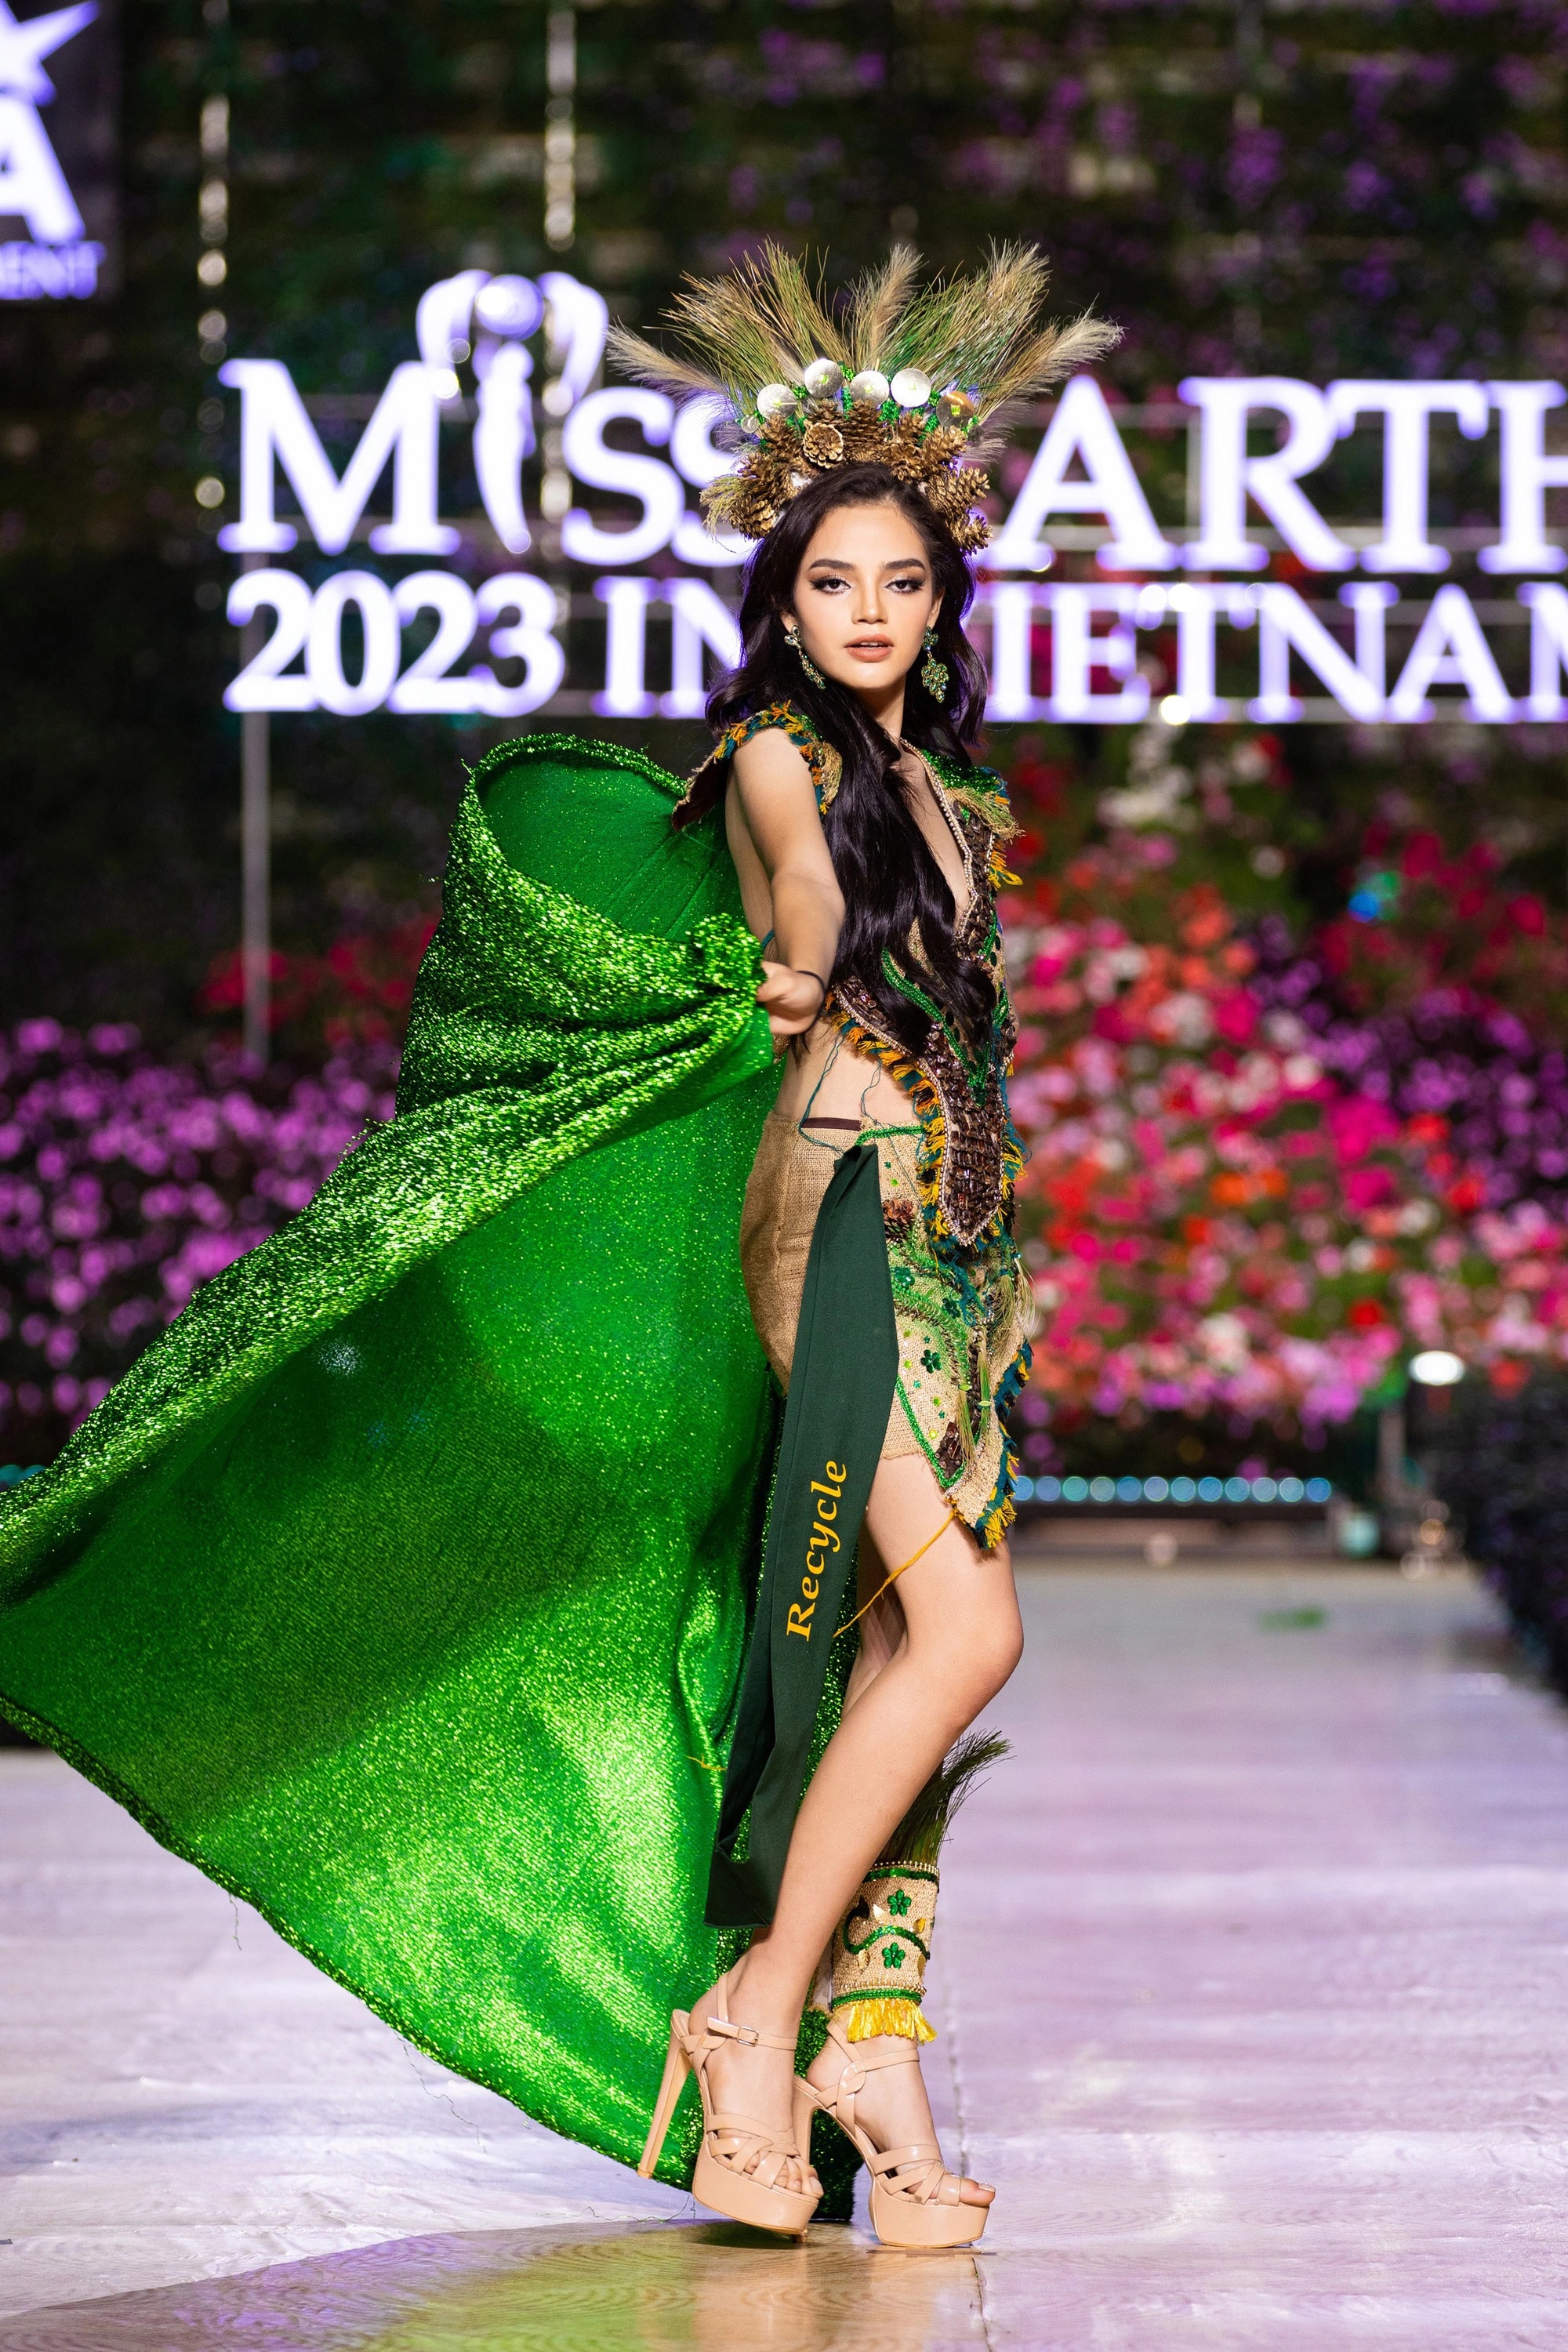 Bán kết Miss Earth 2023 màn trình Trang phục Dân tộc bùng nổ hình ảnh cỏ hoa, muông thú - Ảnh 26.